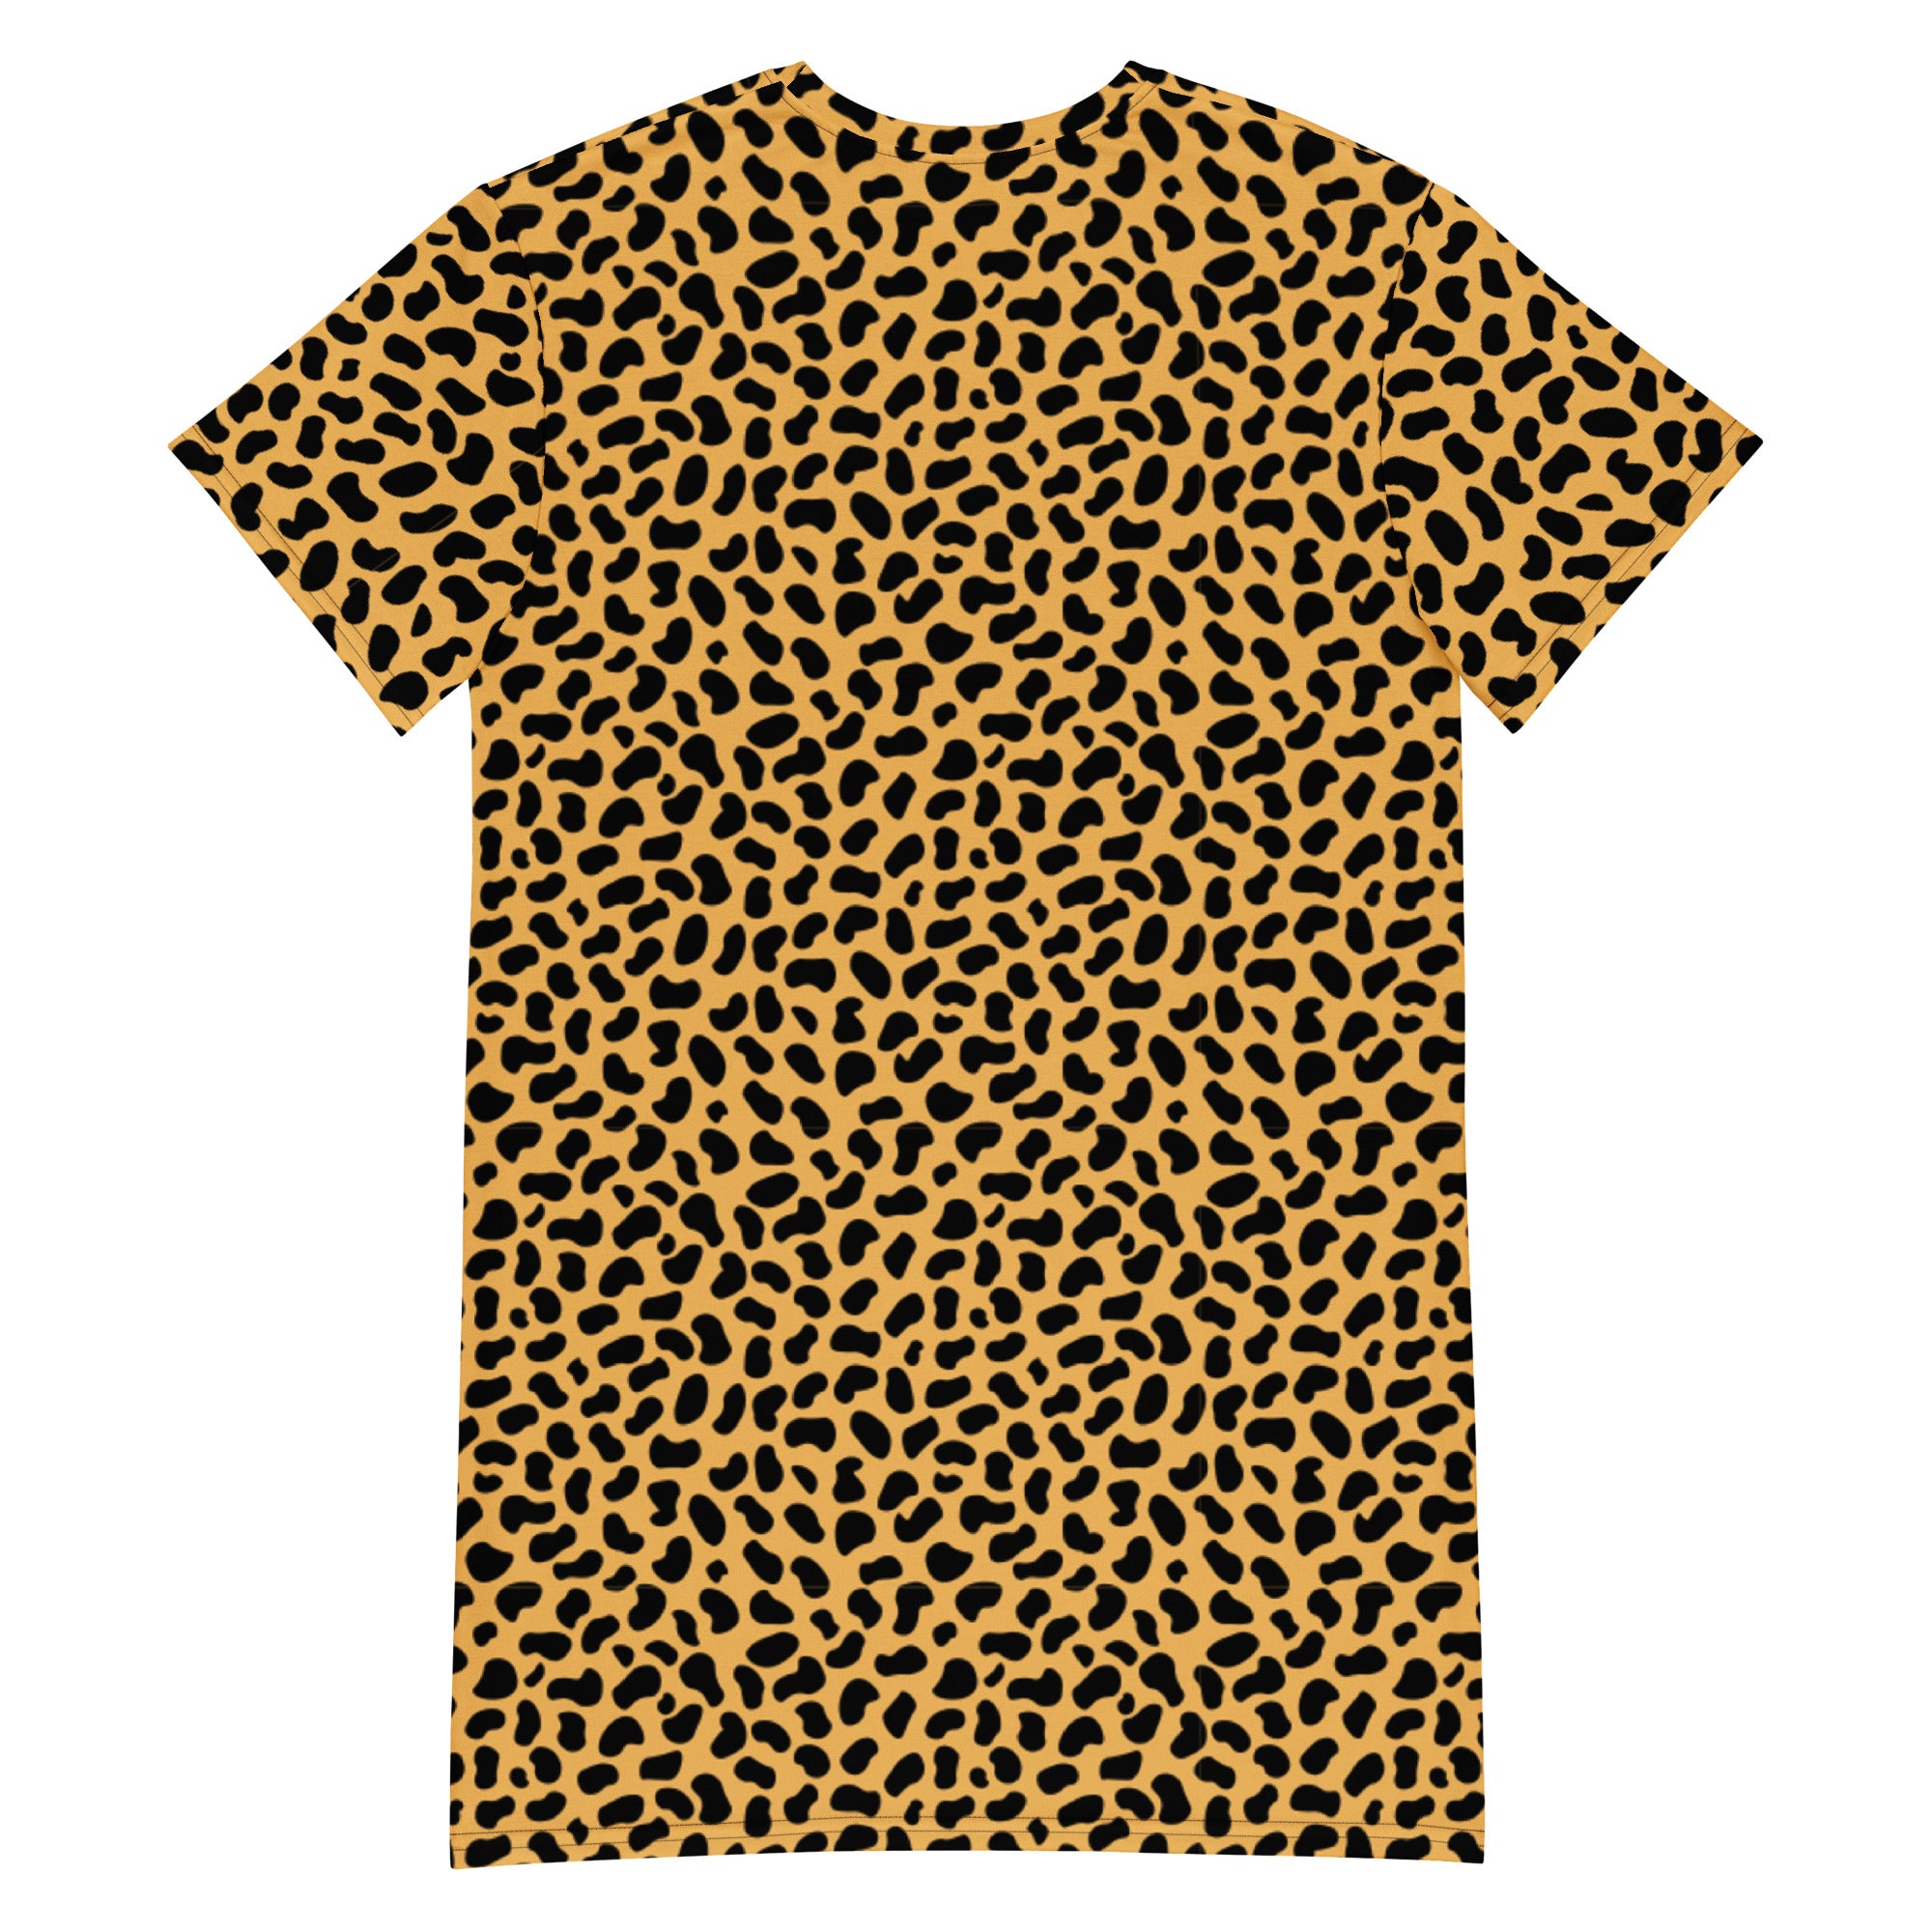 Wmns Cheetah T-shirt Dress